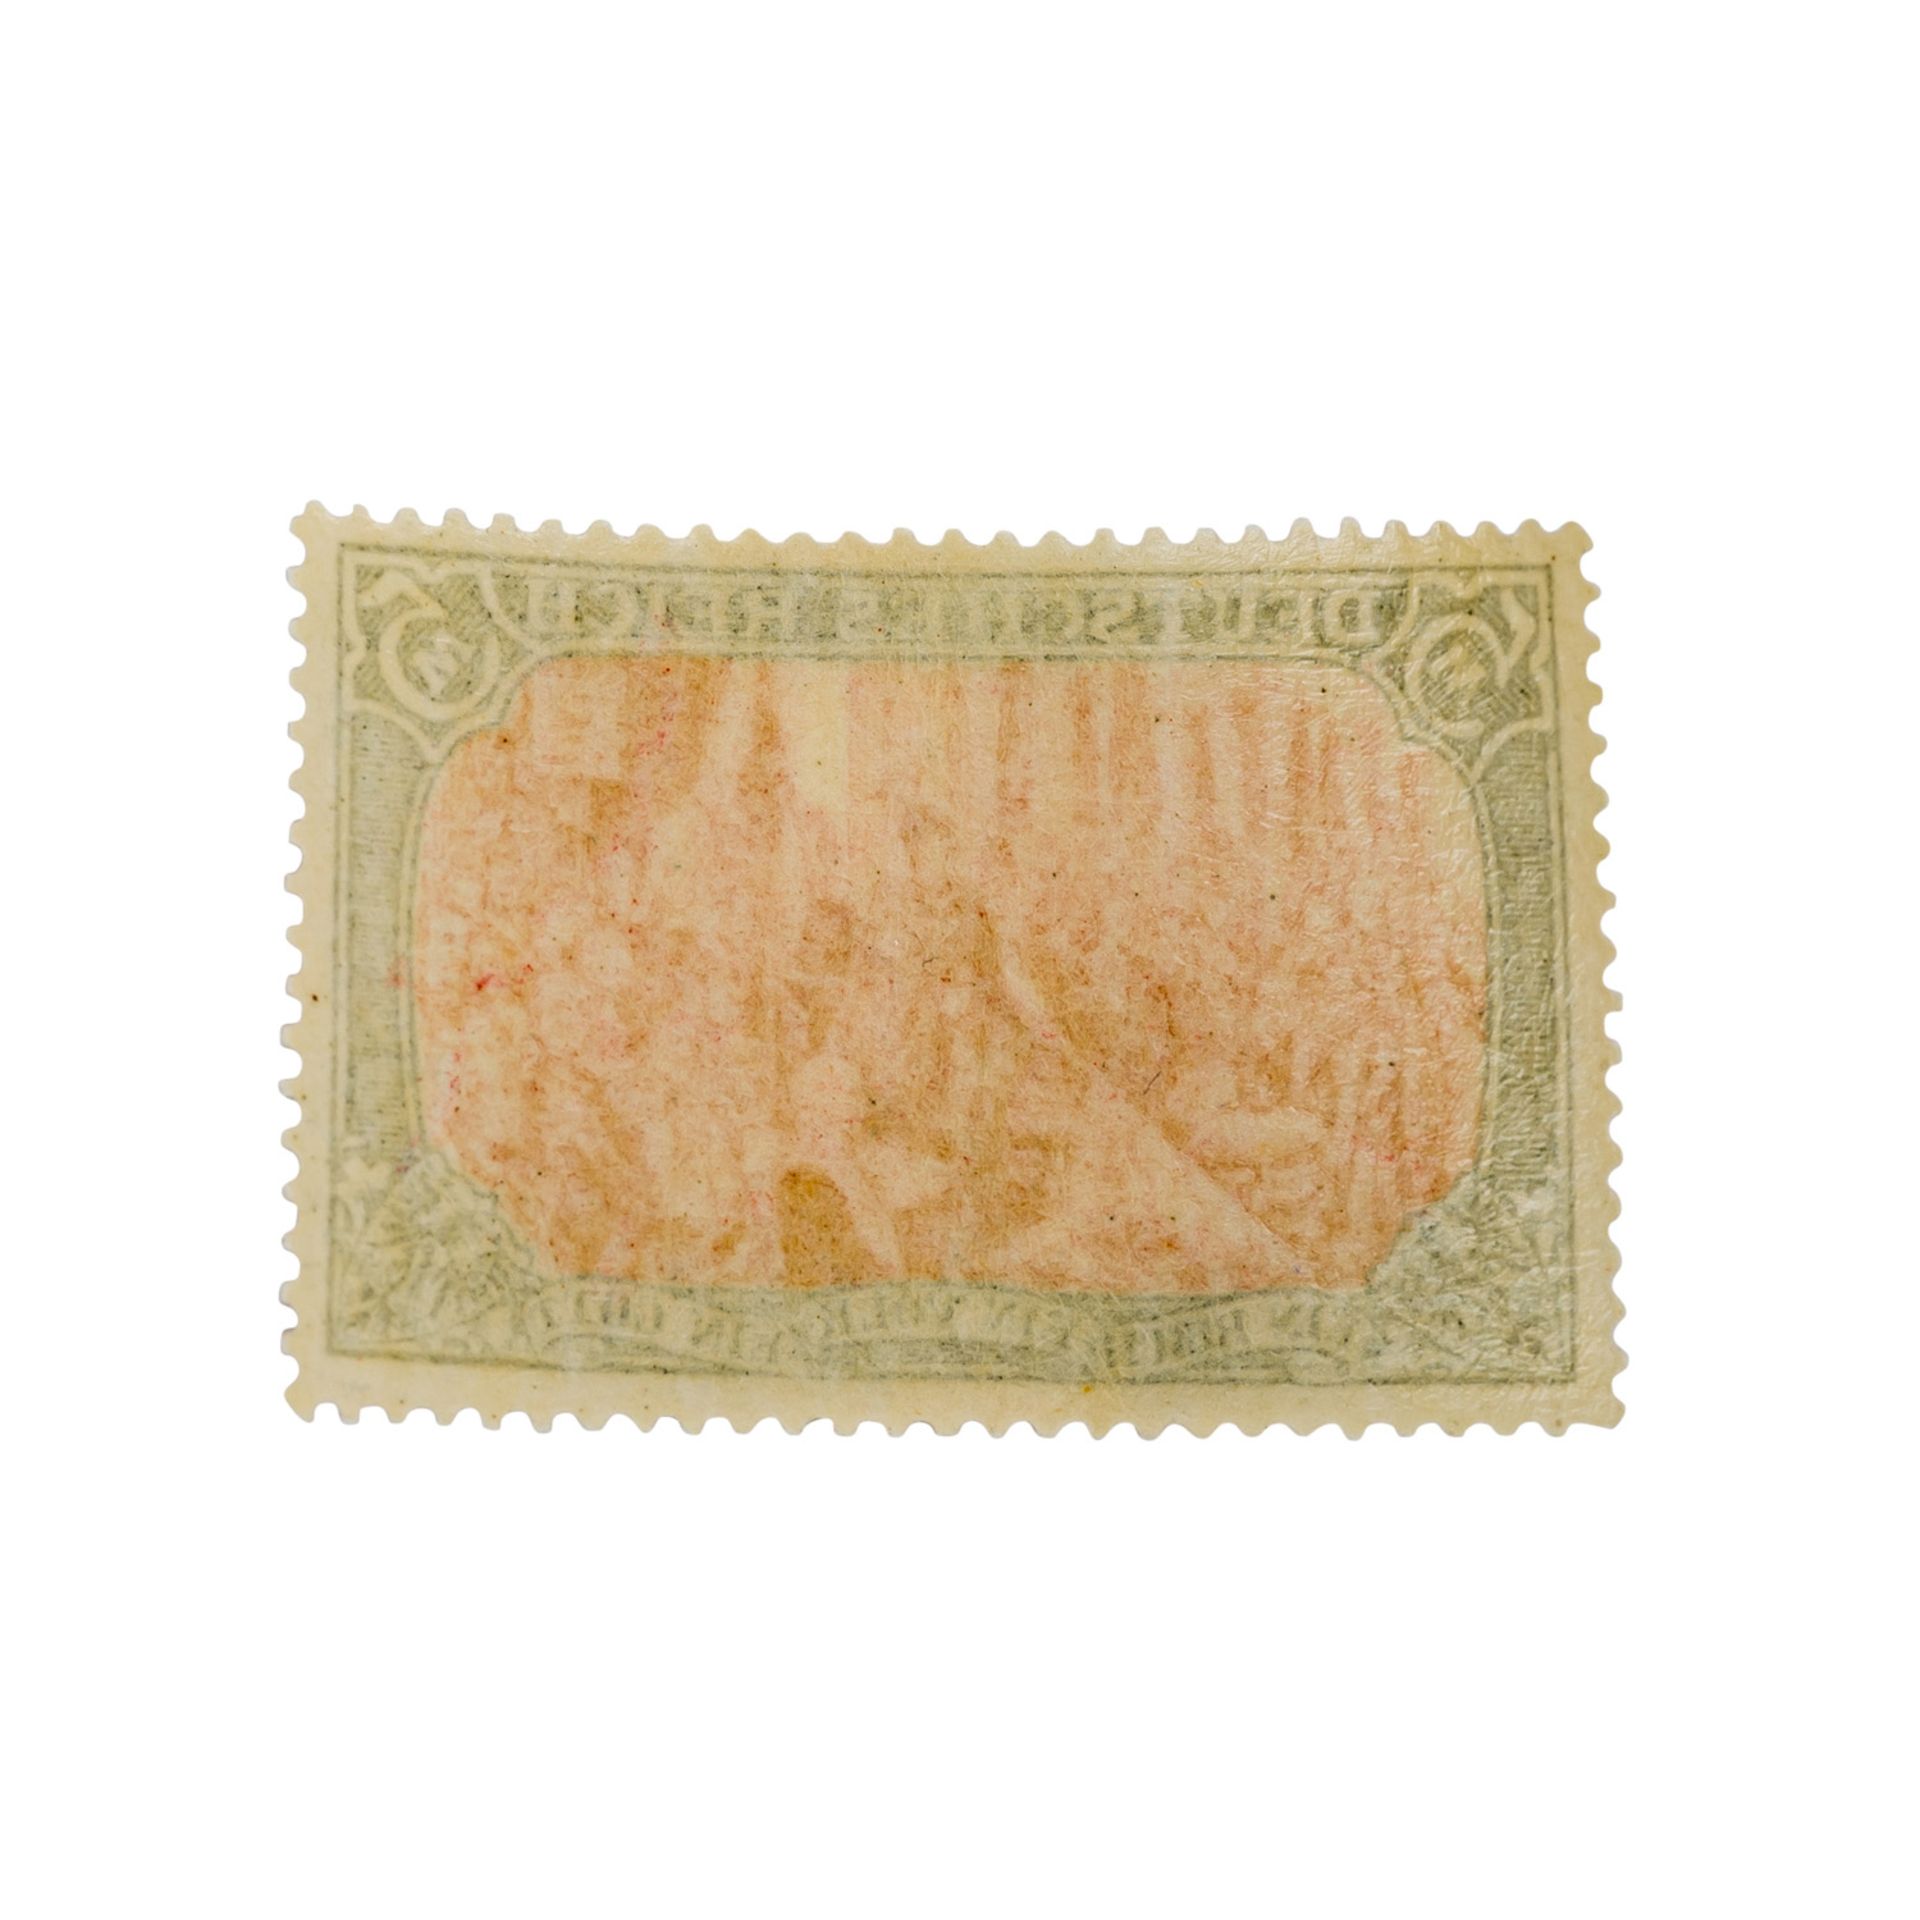 Dt. Kaiserreich 1902 Mi-Nr. 81 Aa Originalmarke mit echter Gummierung. Die Marke ist f - Bild 4 aus 4